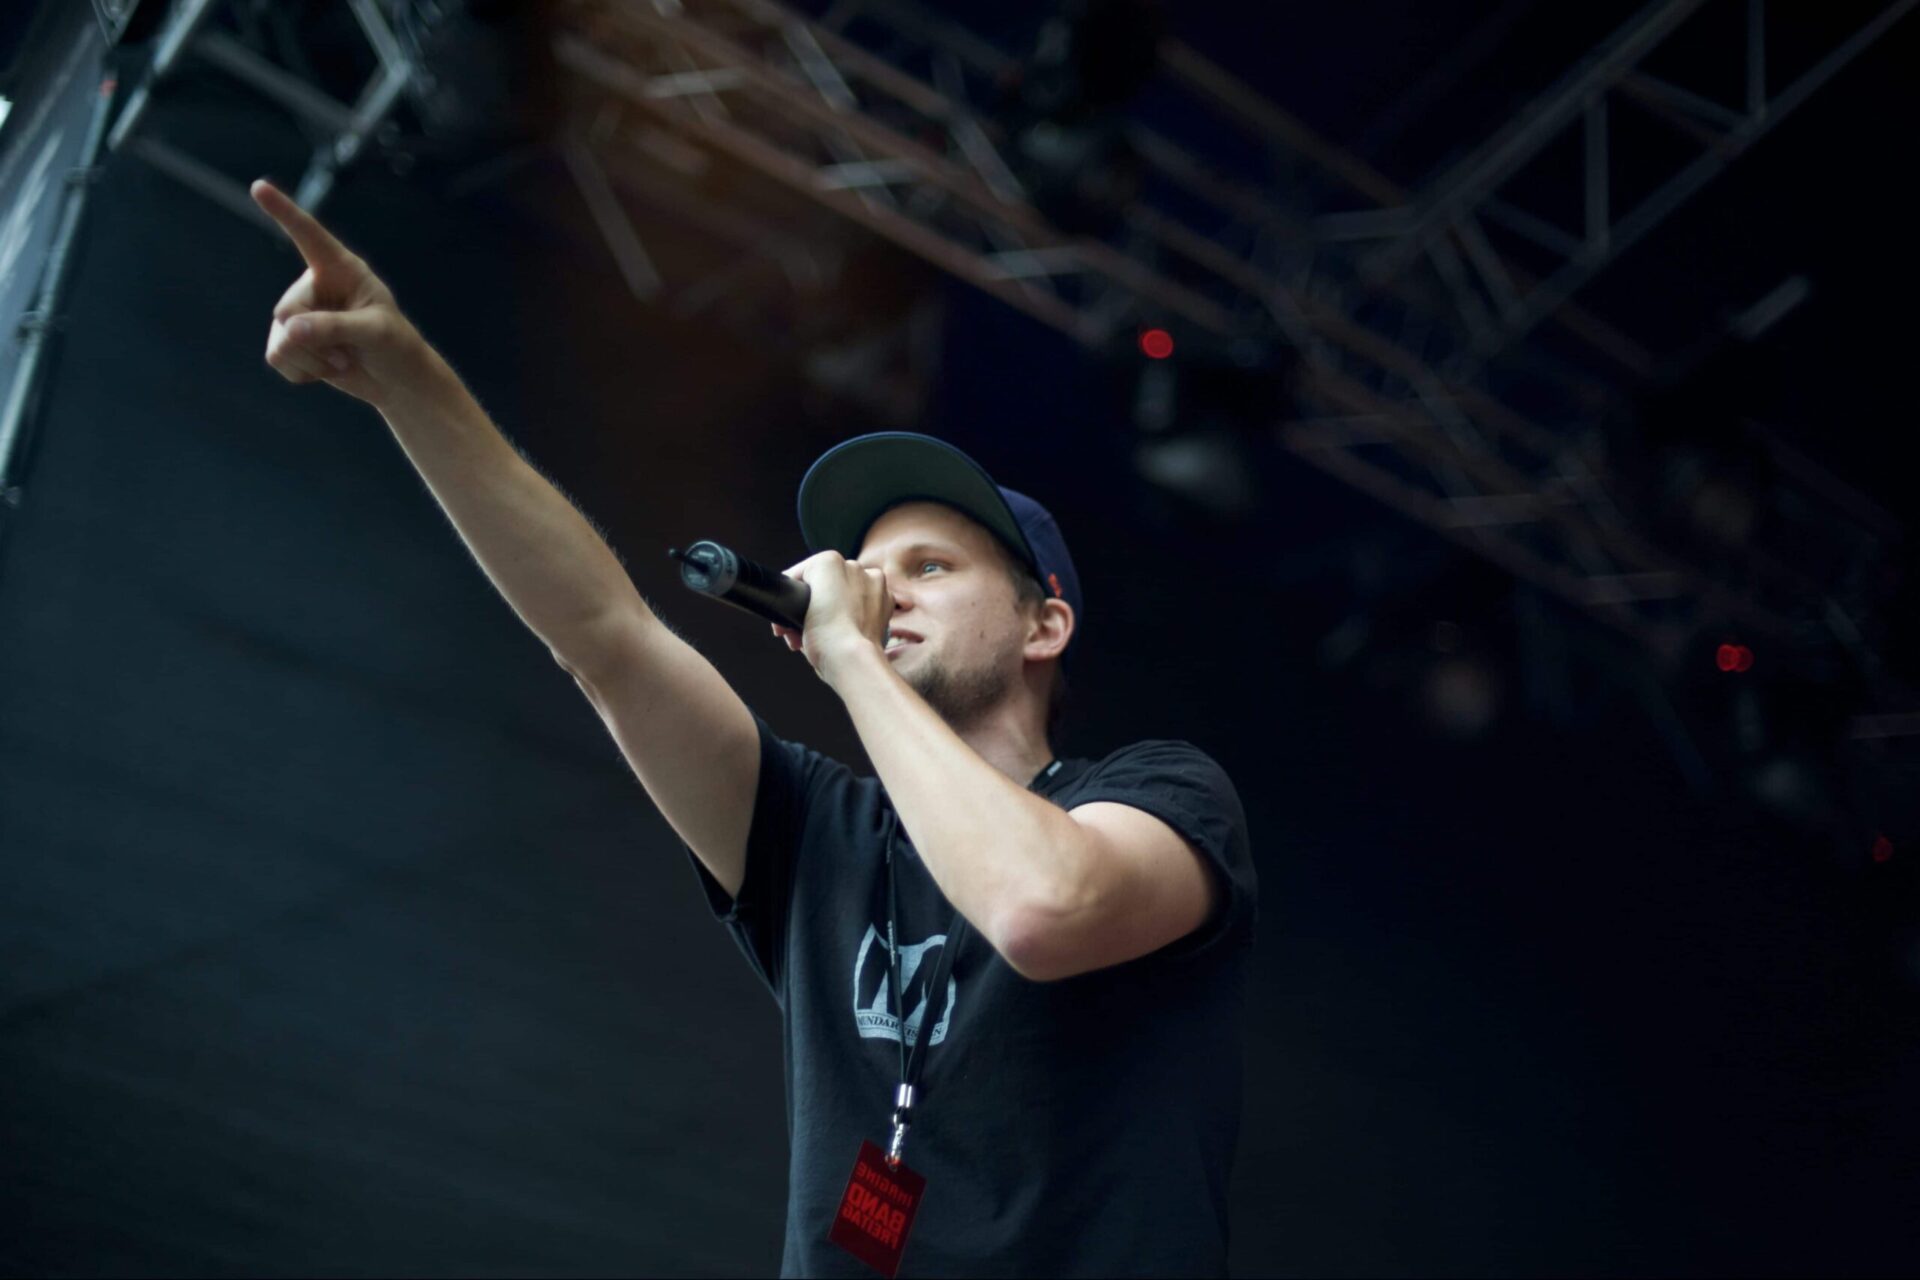 Grossaufnahme des Rappers und Beatboxers Knackeboul am imagine festival 2010.